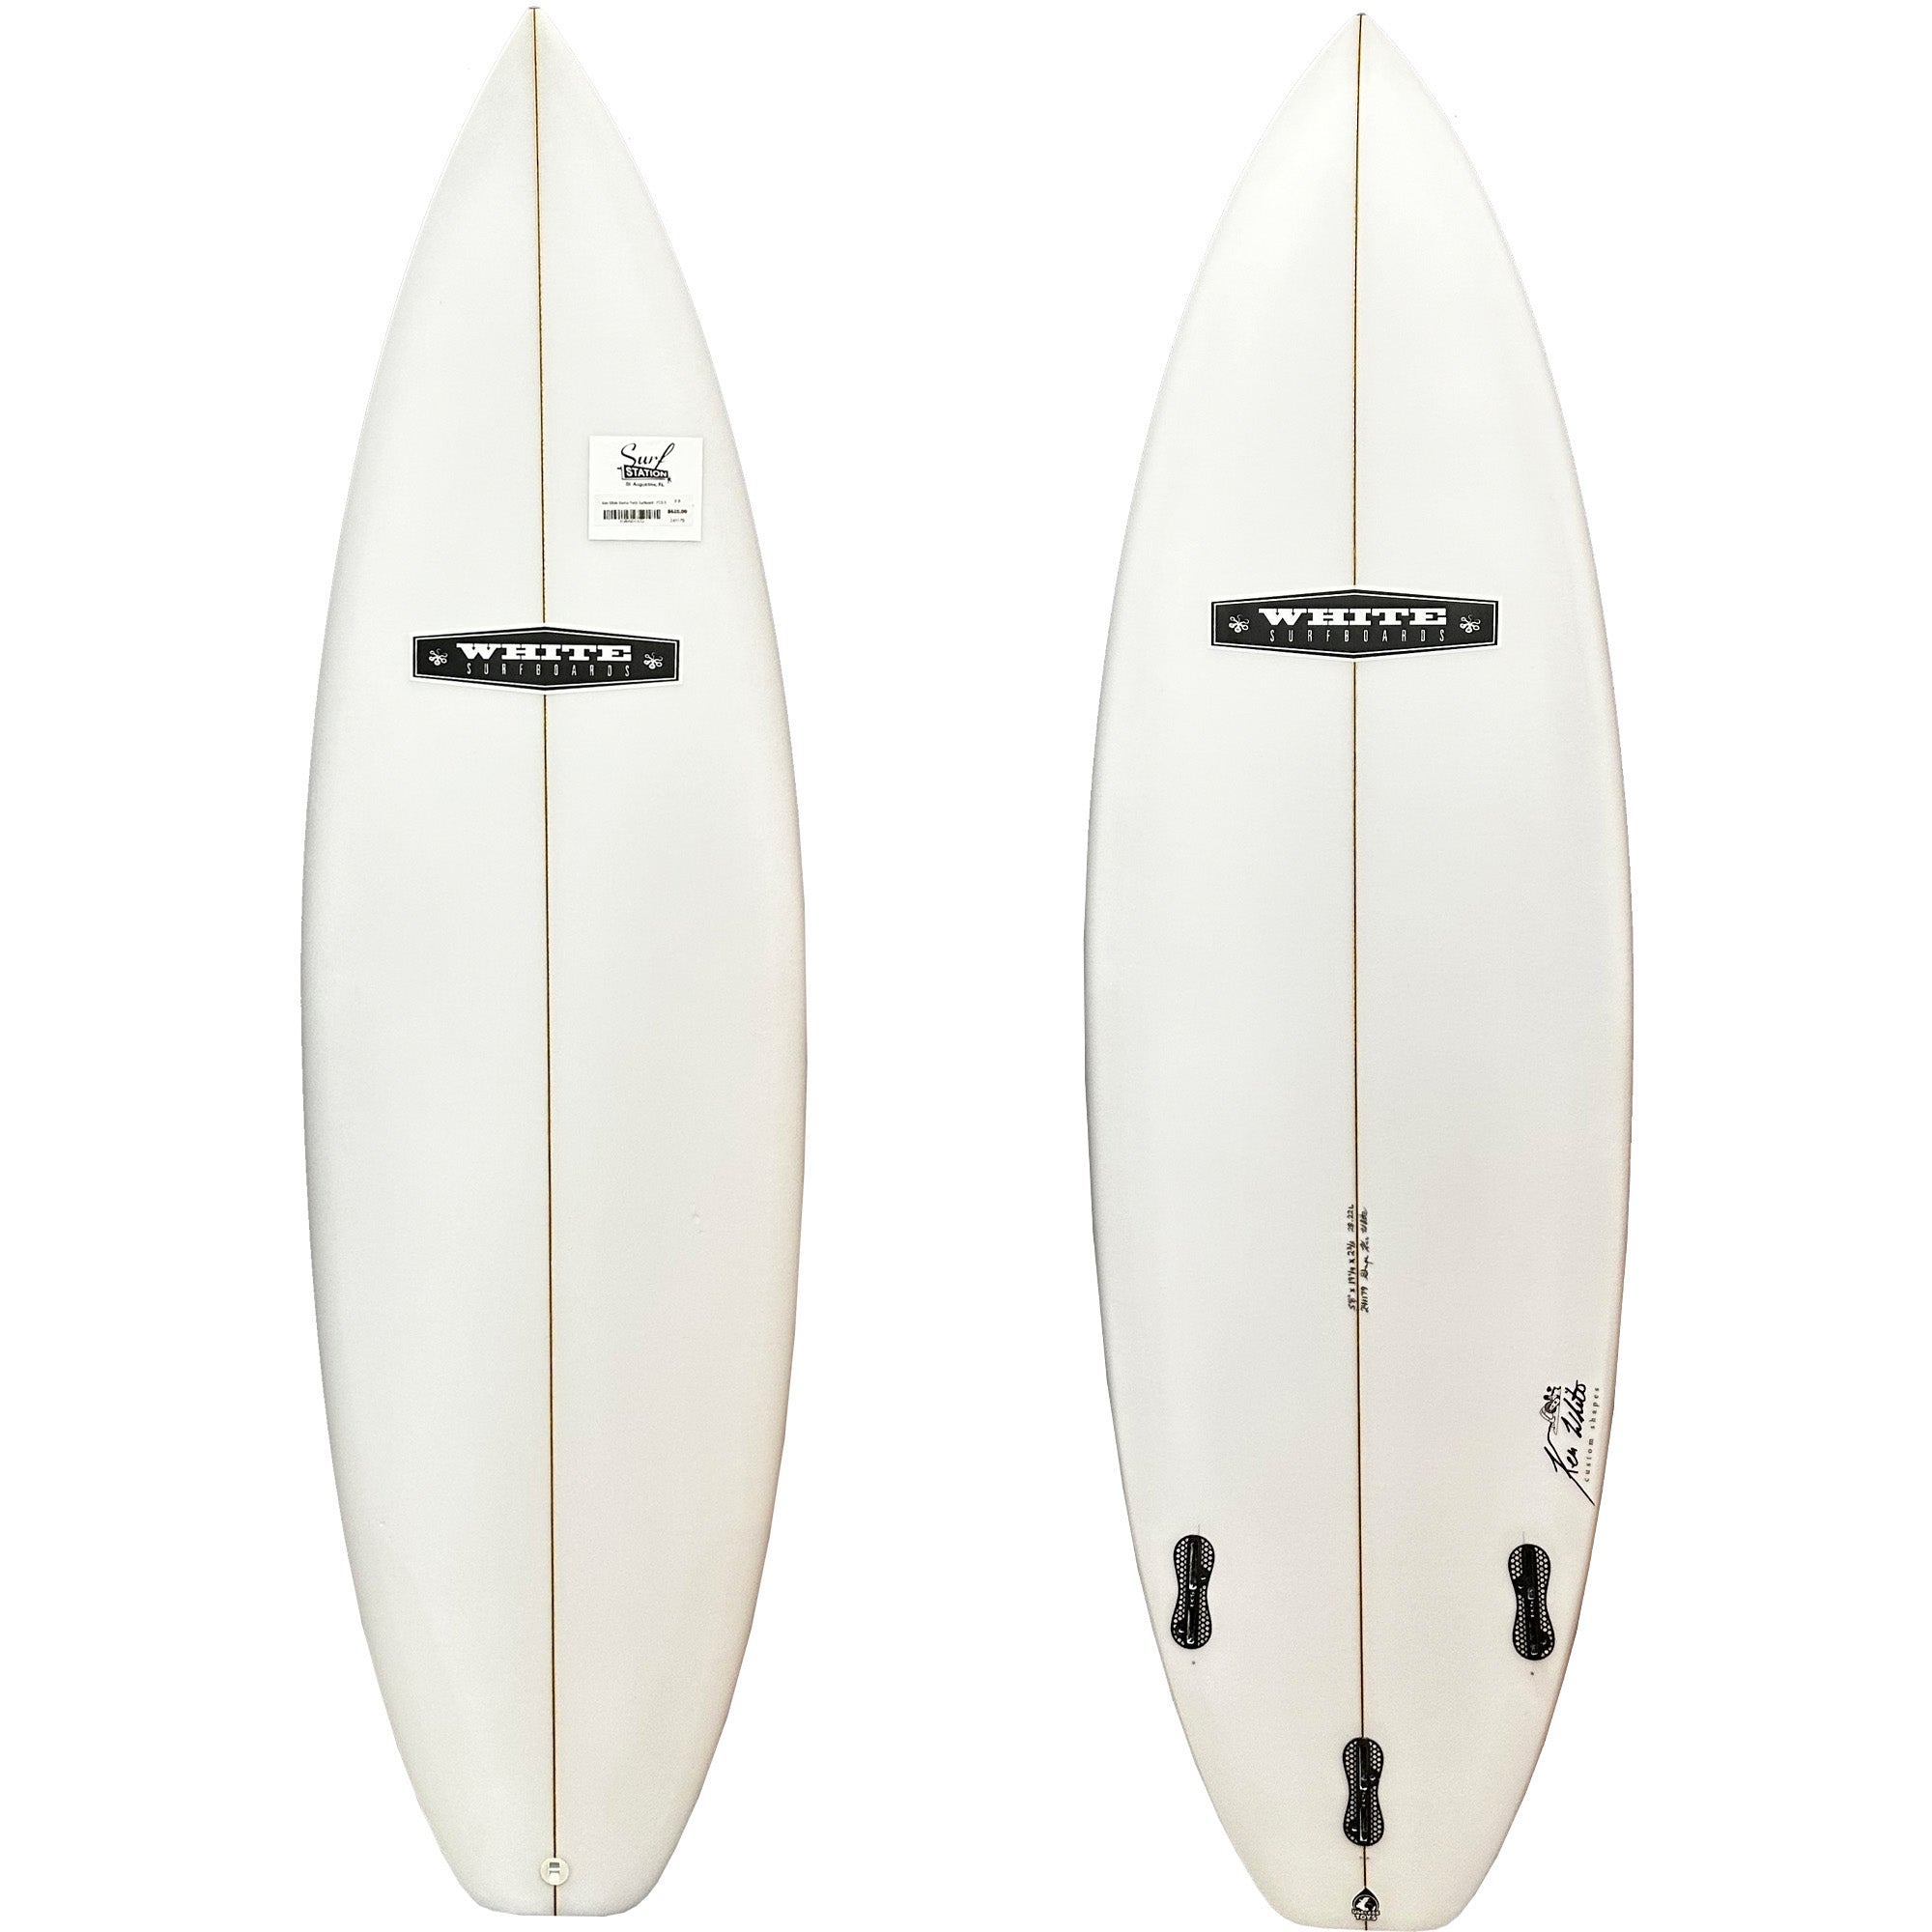 Ken White Dance Party Surfboard - FCS II